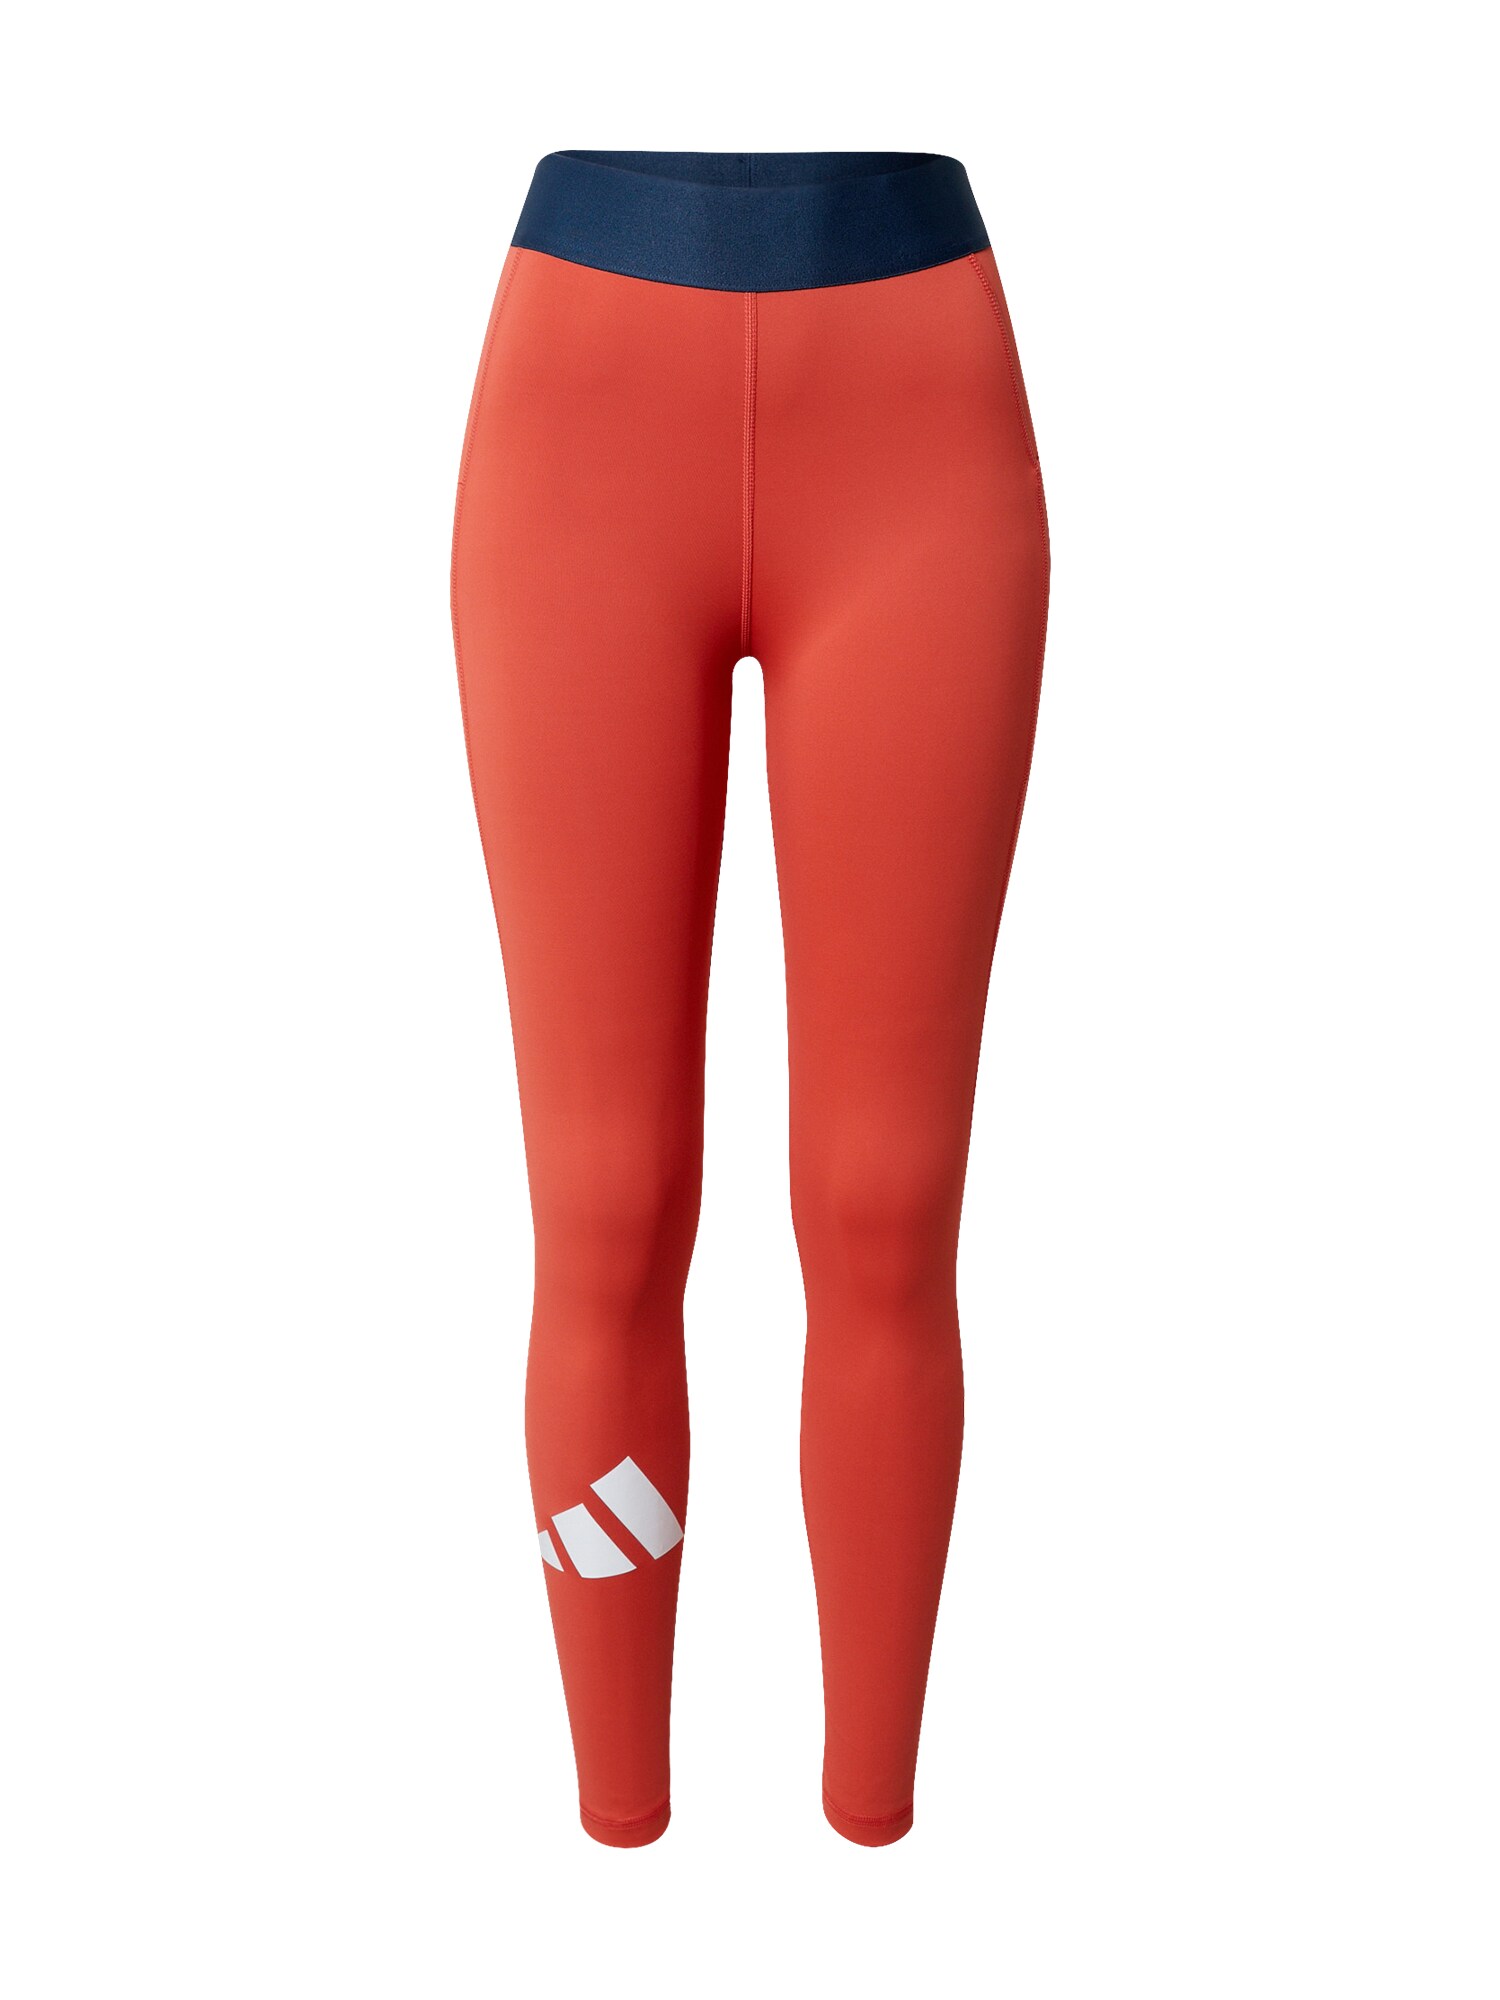 ADIDAS PERFORMANCE Sportinės kelnės  oranžinė-raudona / tamsiai mėlyna / balta